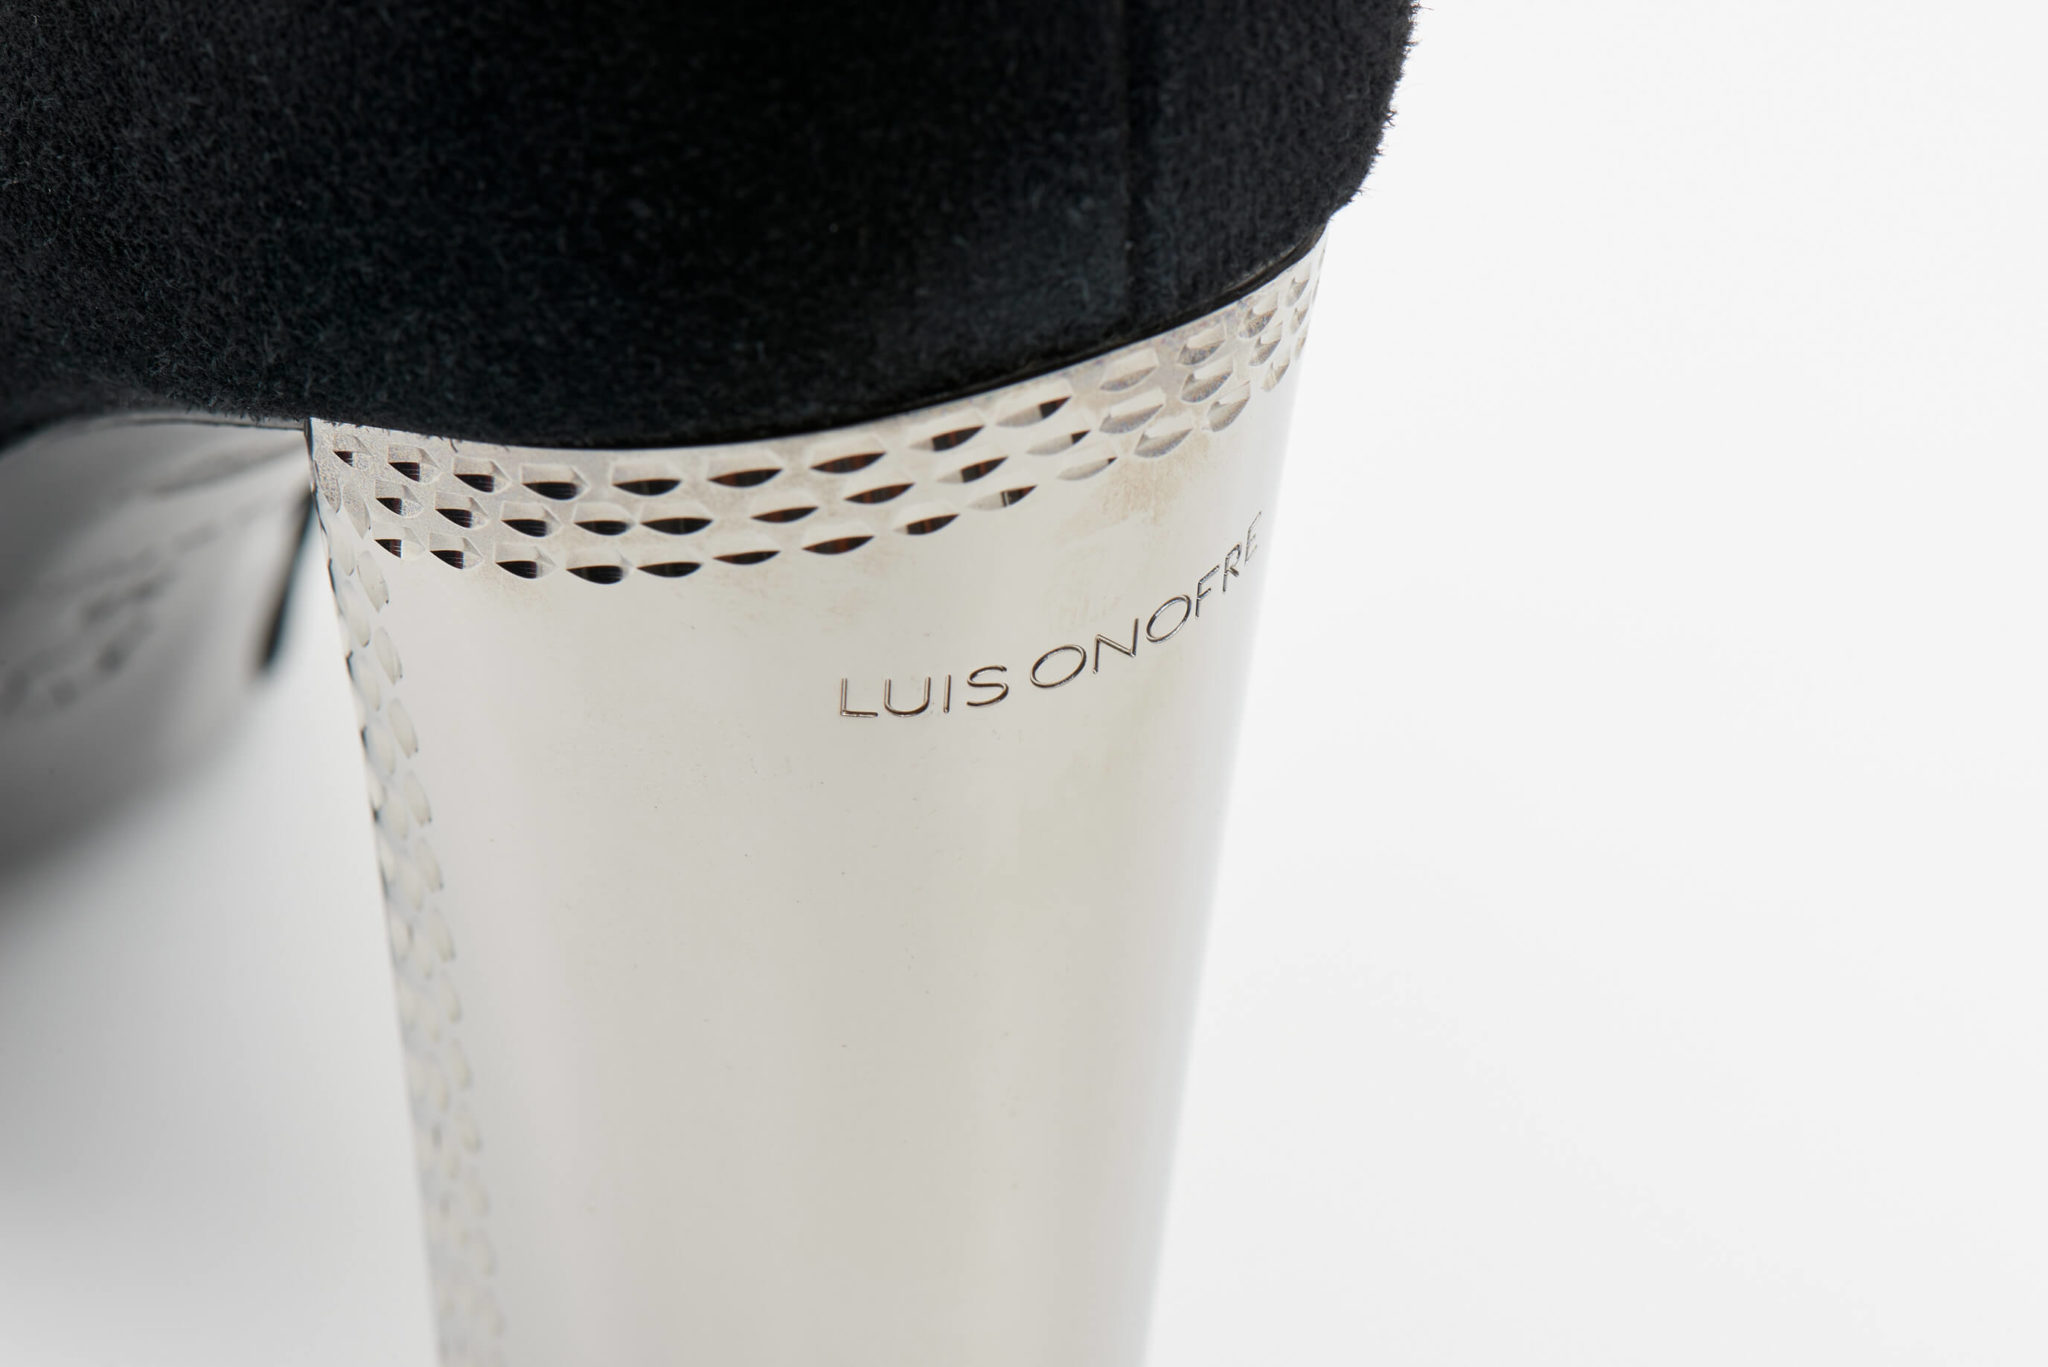 Luis Onofre Portuguese Shoes FW22 – 3740_01 – Beau-7